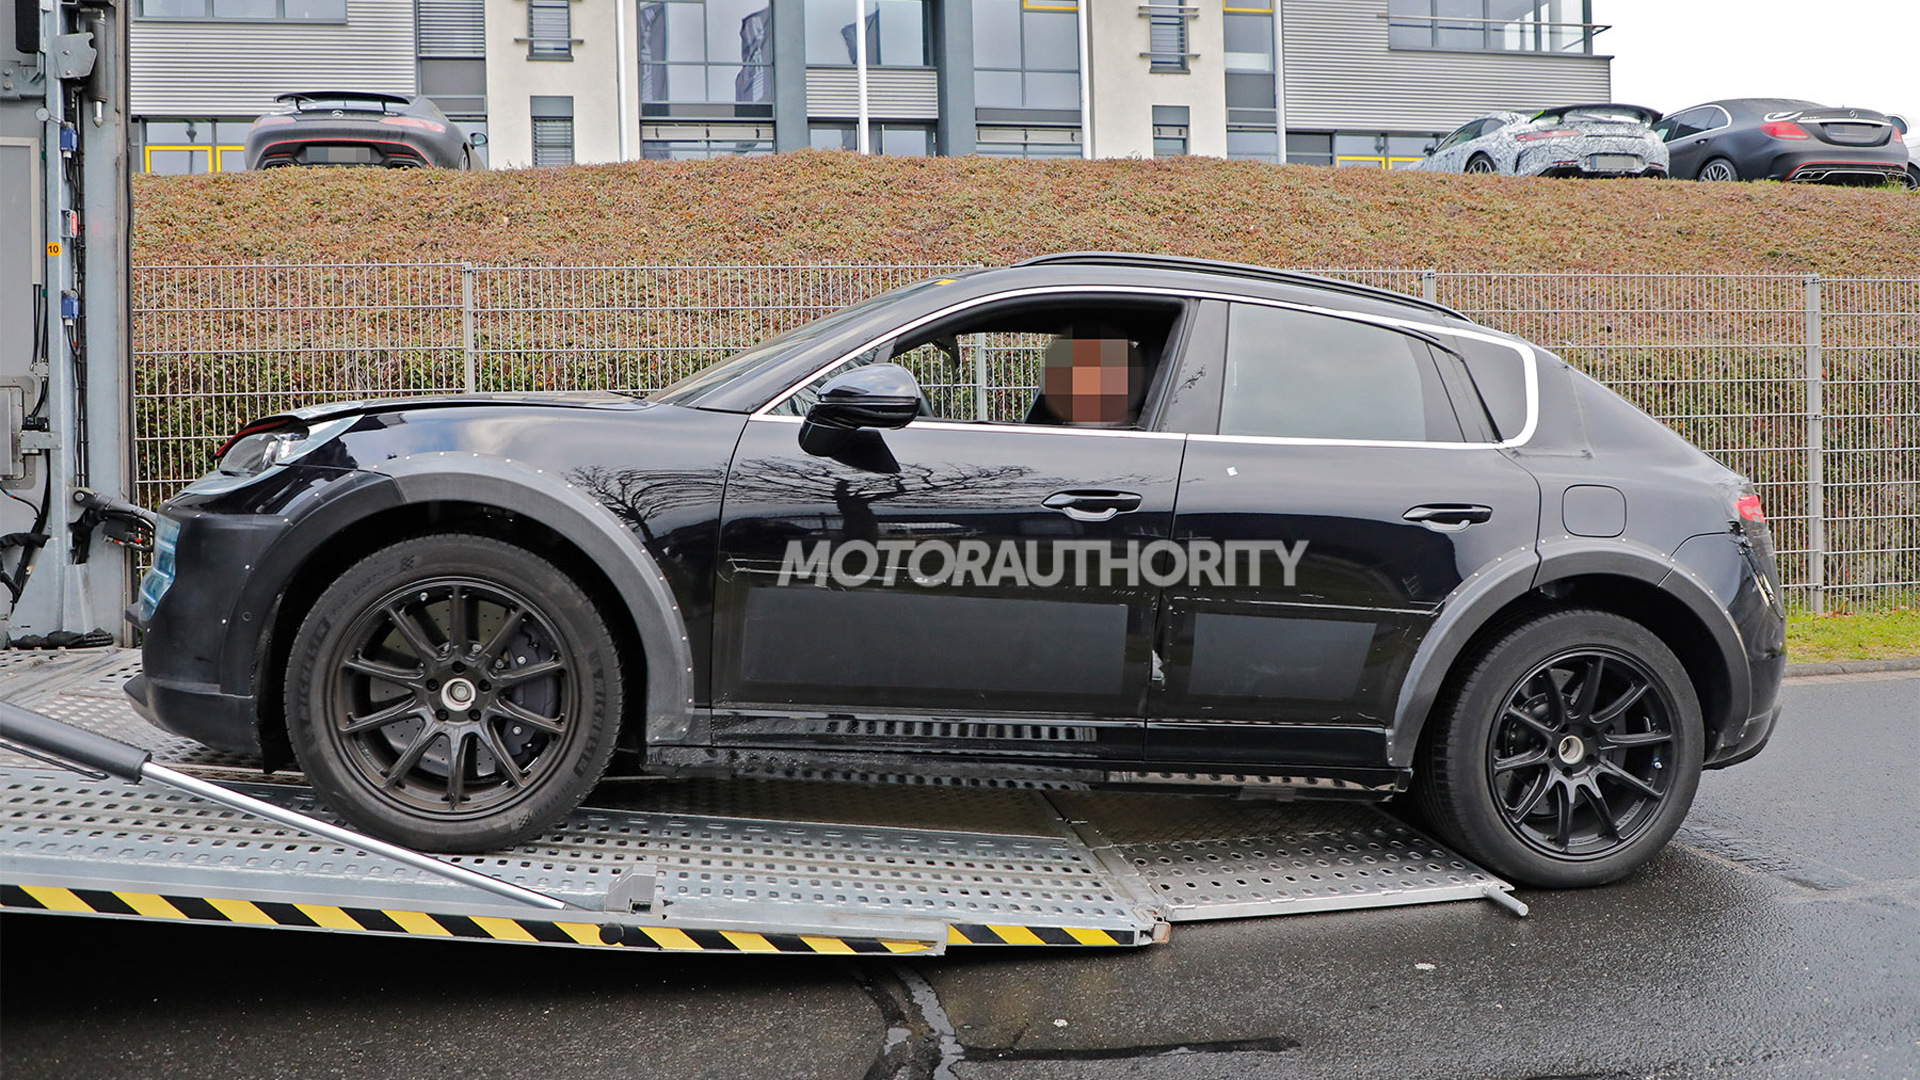 2027 Porsche Cayenne EV test mule spy shots - Photo credit: Baldauf